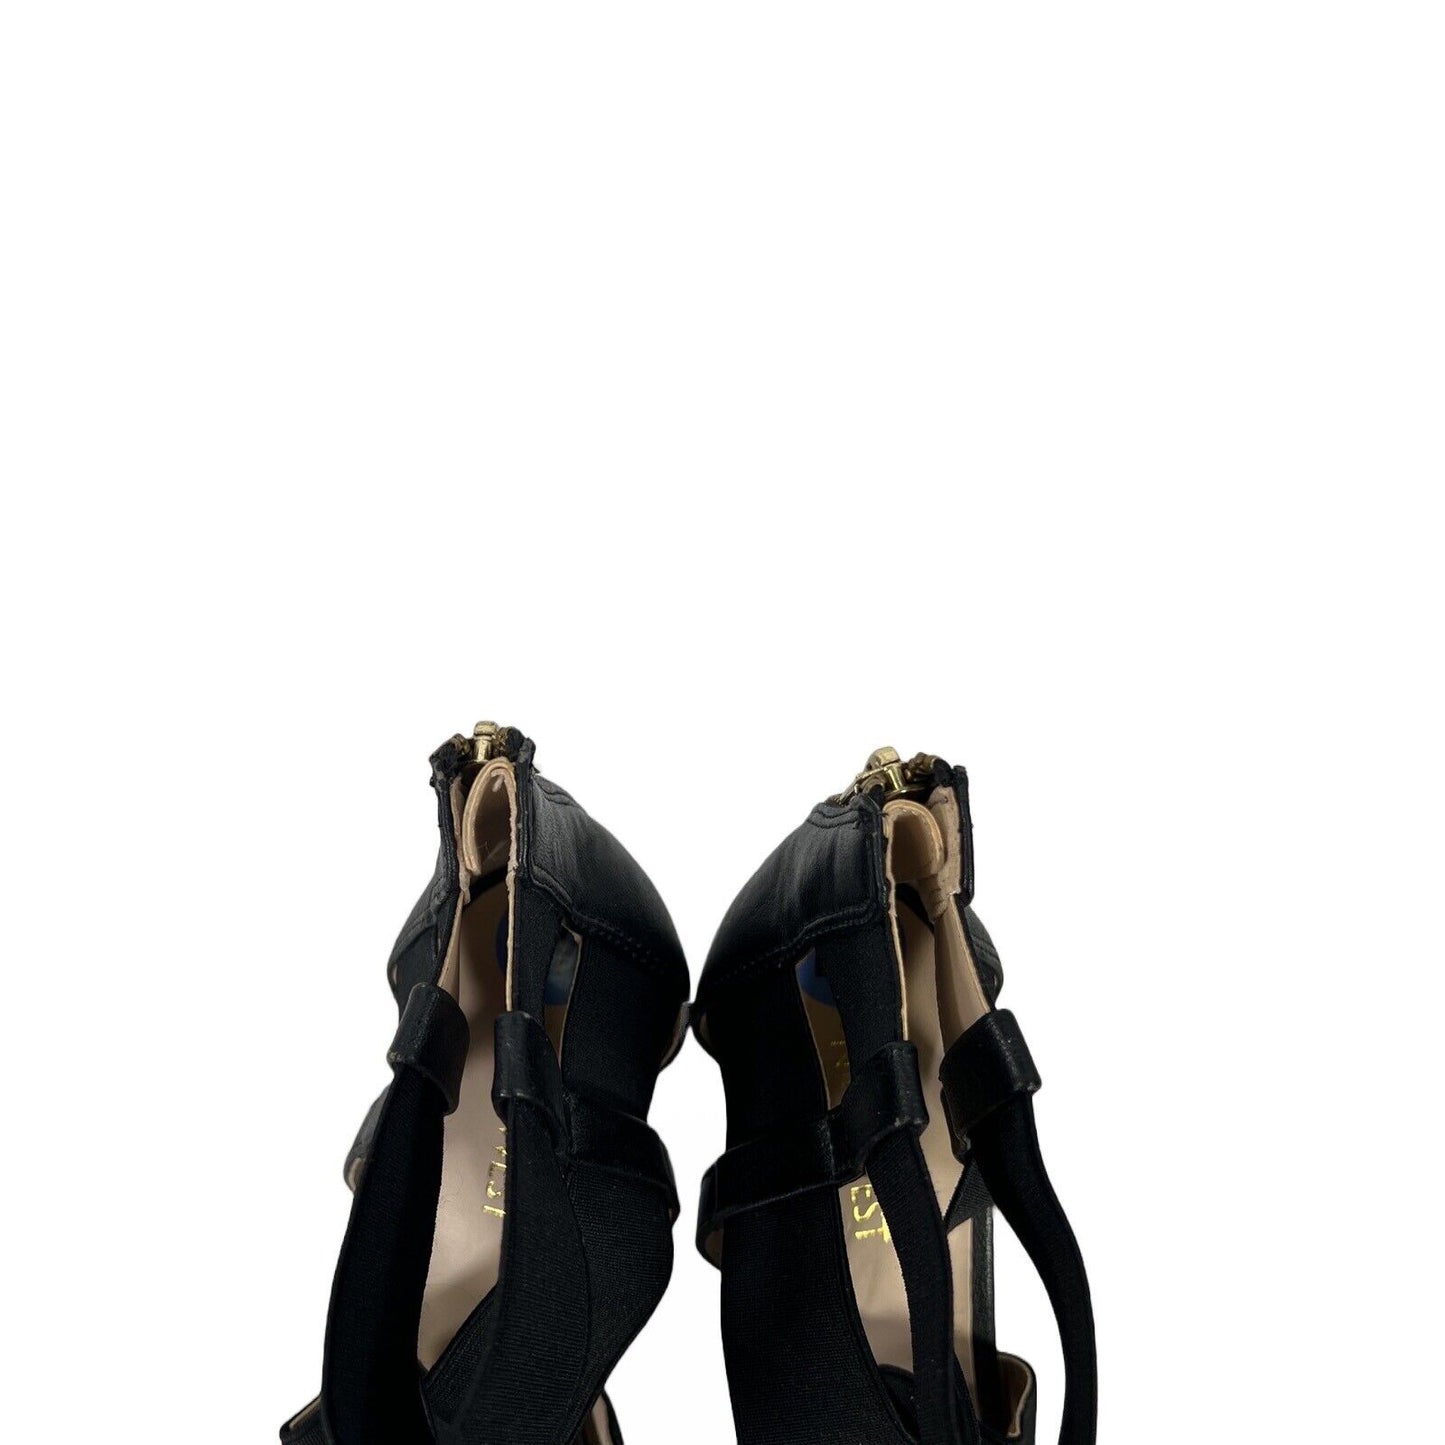 Nine West Women's Black Strappy Daelin Heels - 7.5